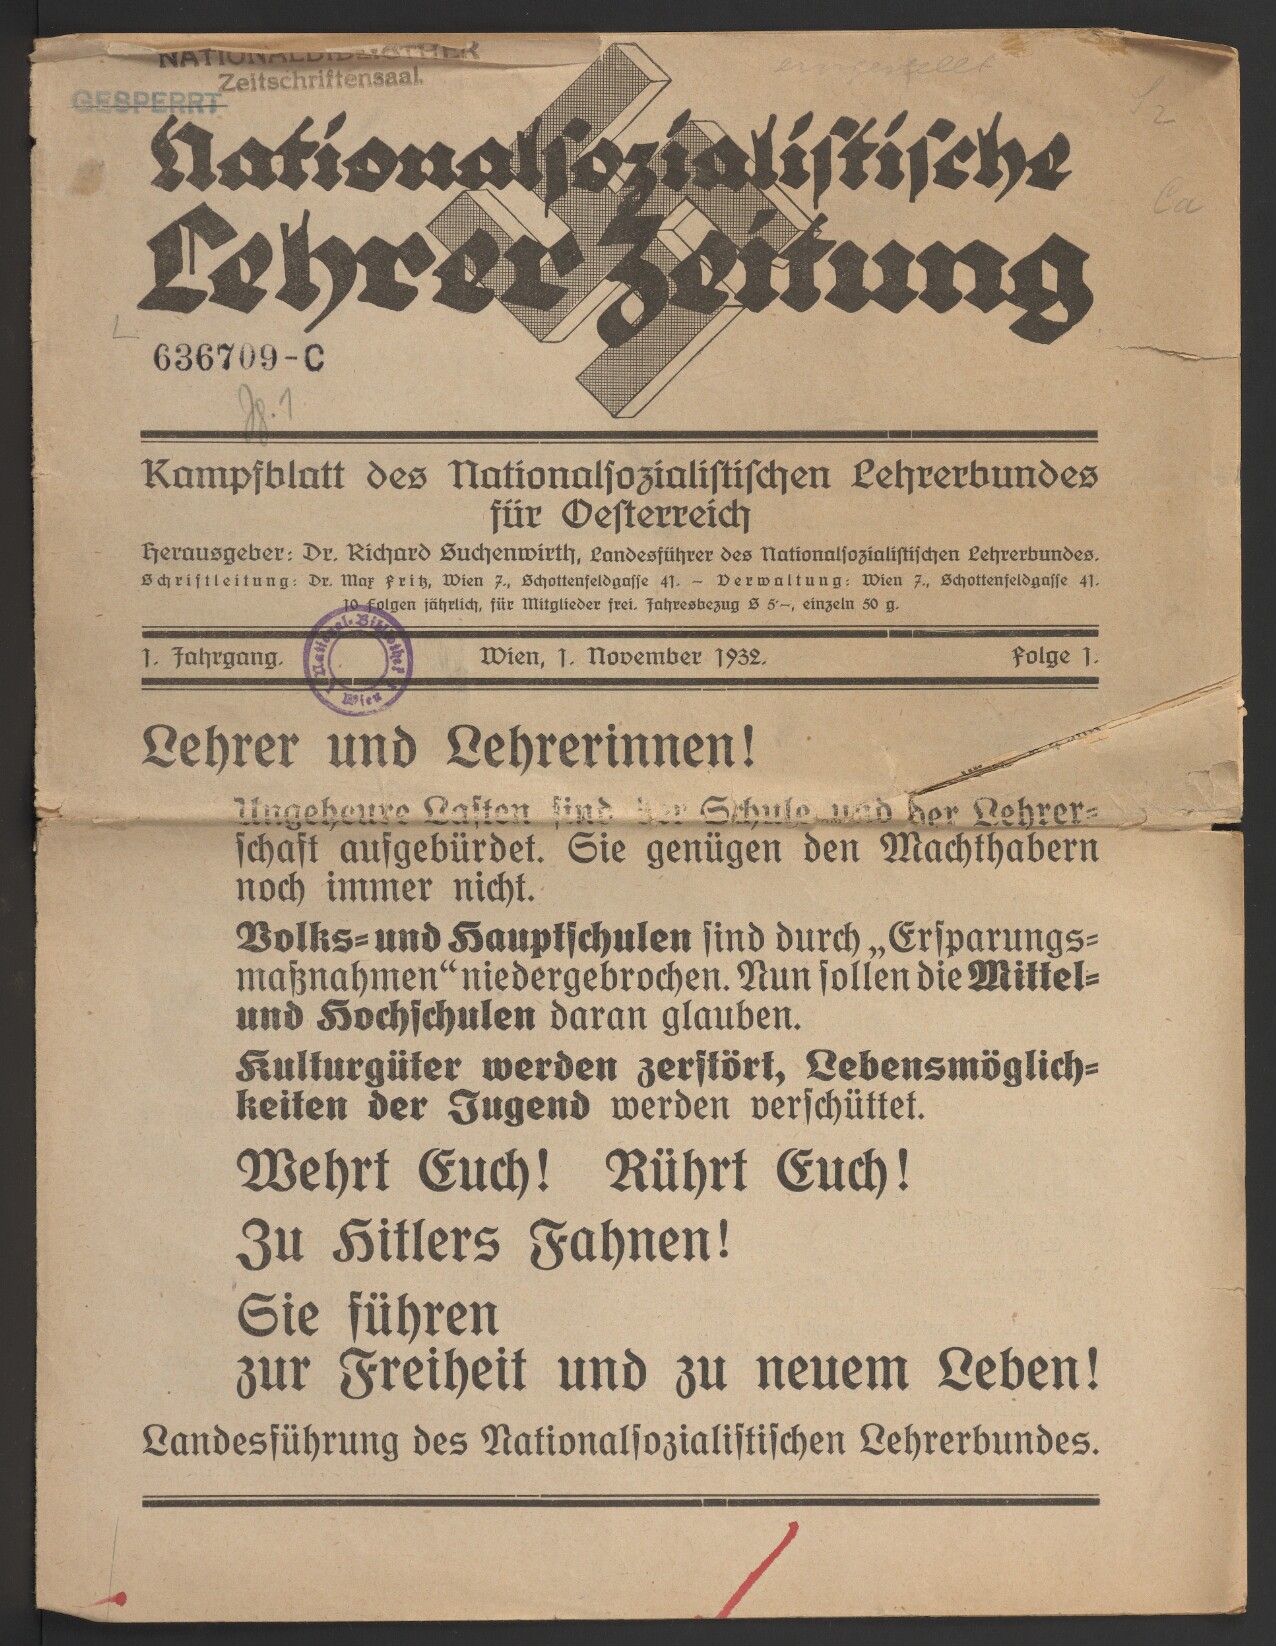 Nationalsozialistische Lehrer-Zeitung, 1932, Folge 1, S. 1, ÖNB/ANNO